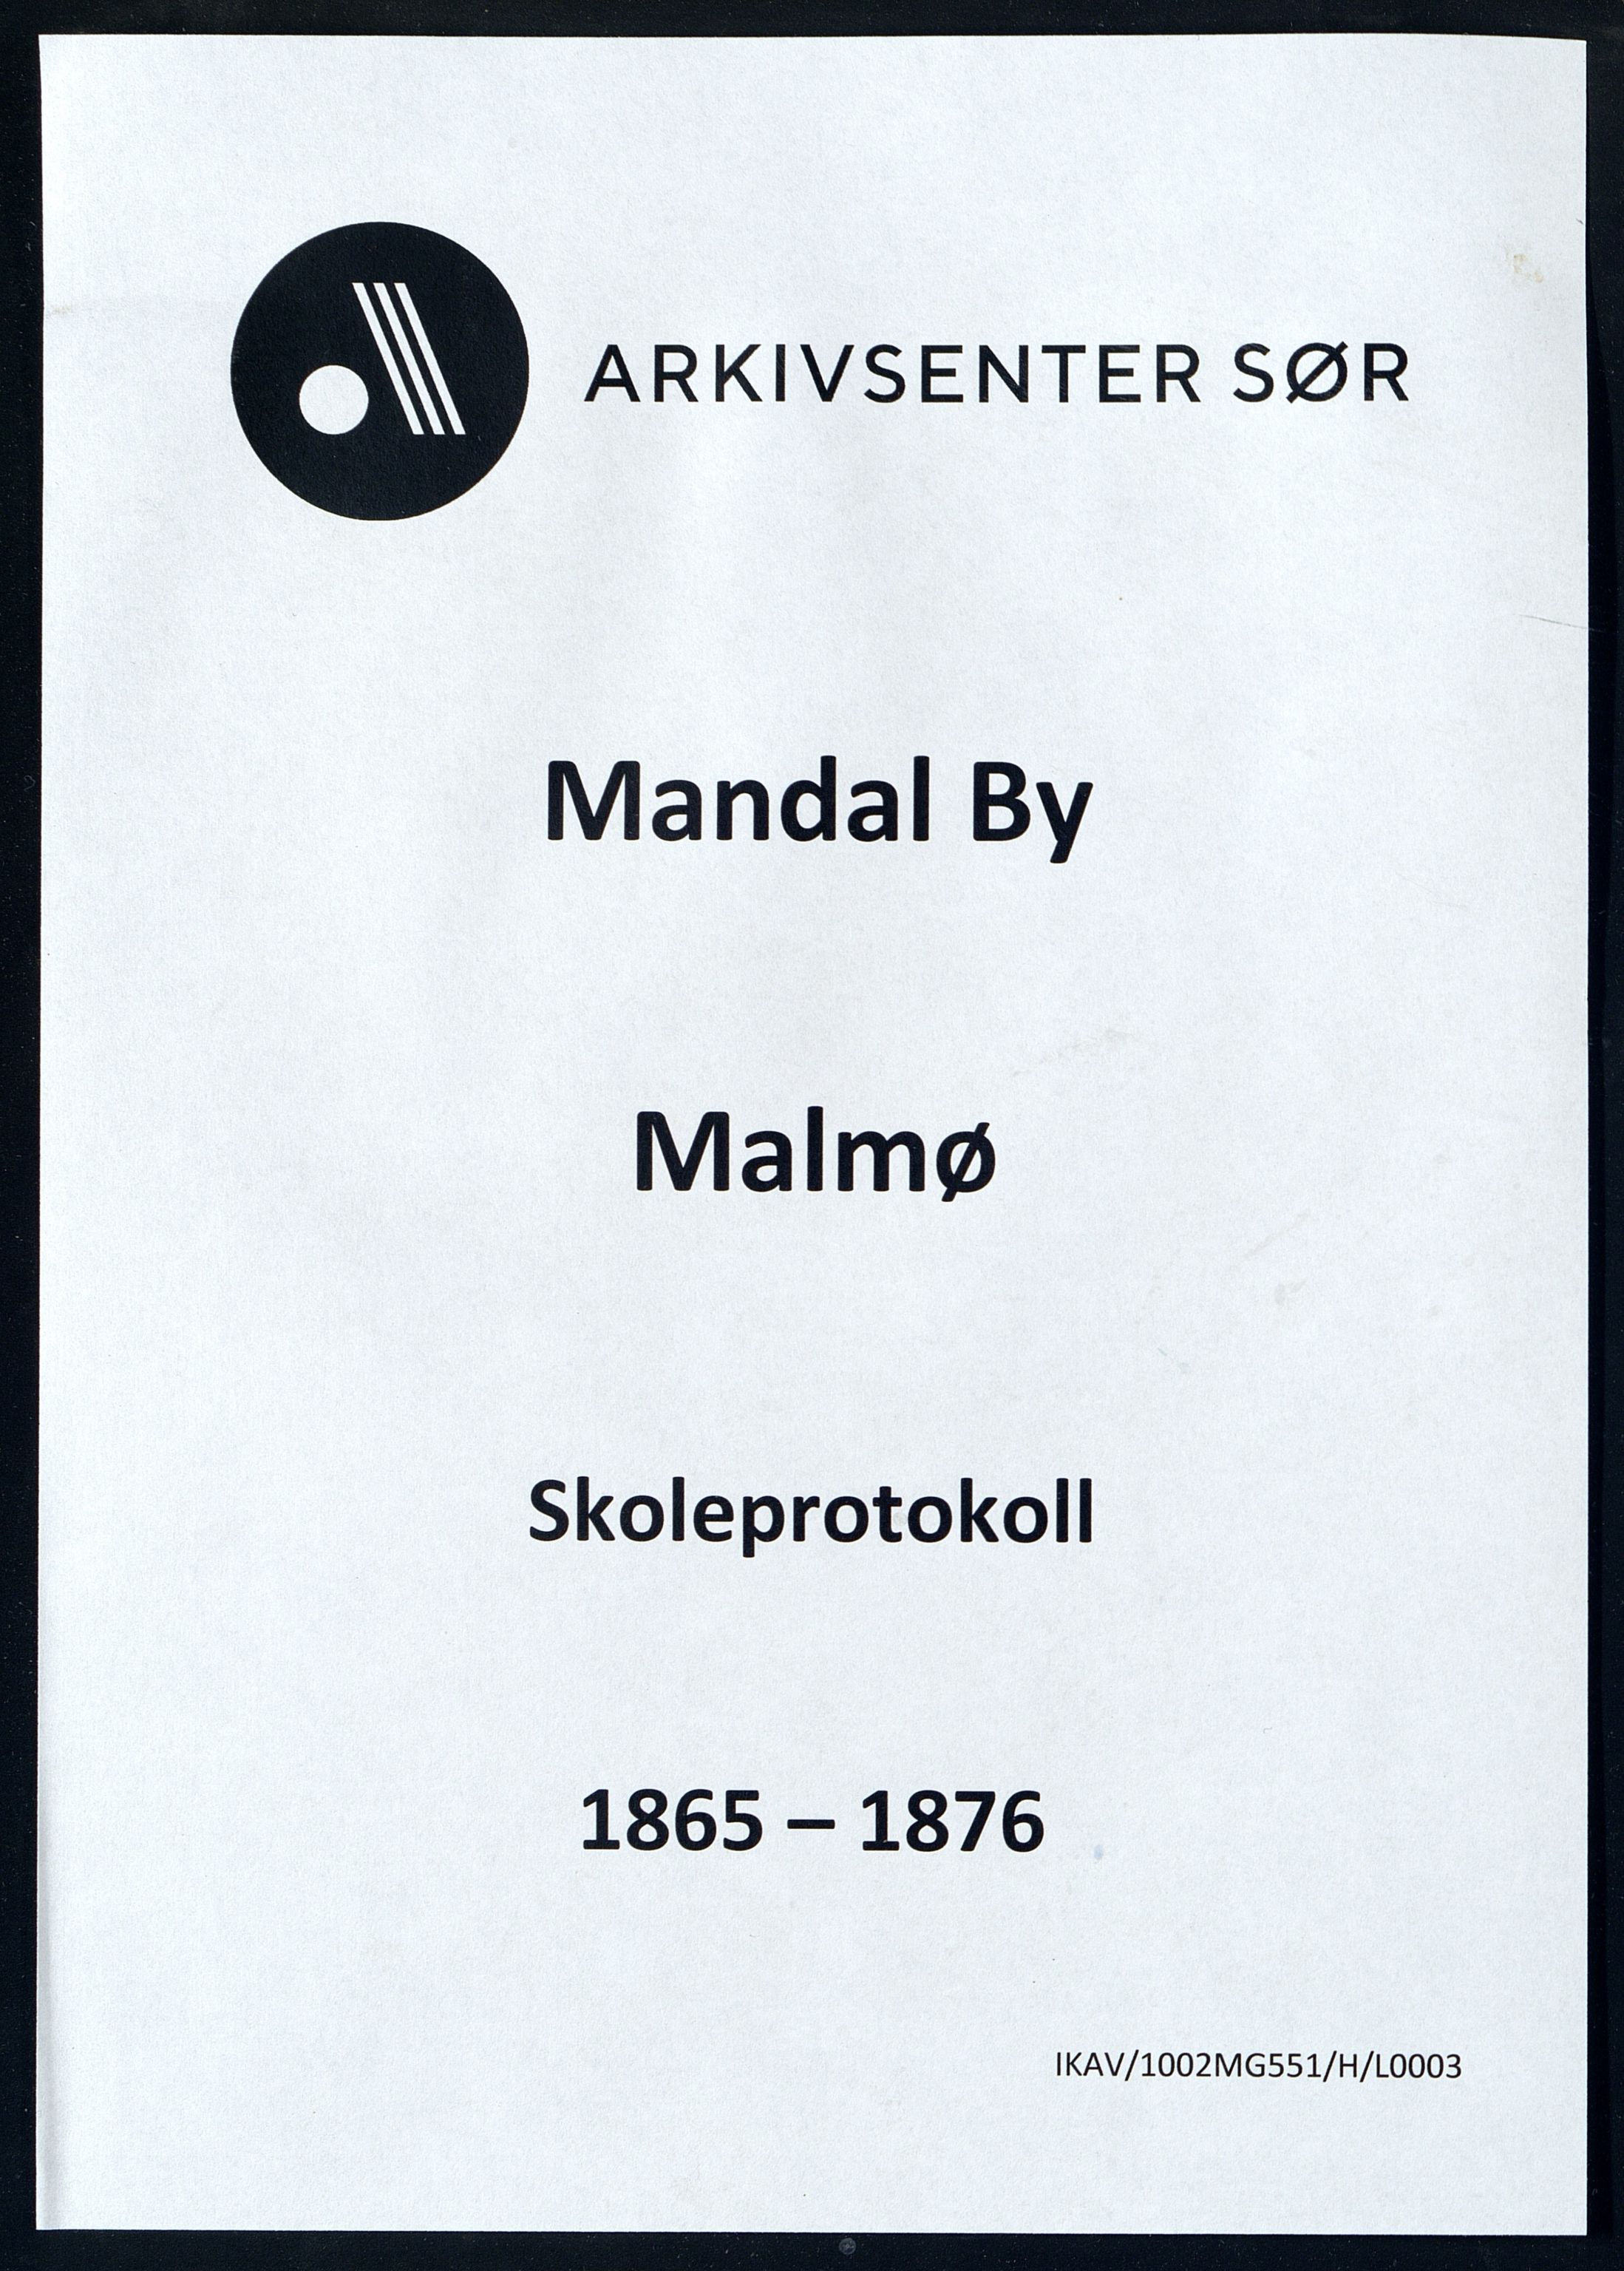 Mandal By - Mandal Allmueskole/Folkeskole/Skole, IKAV/1002MG551/H/L0003: Skoleprotokoll, 1865-1876